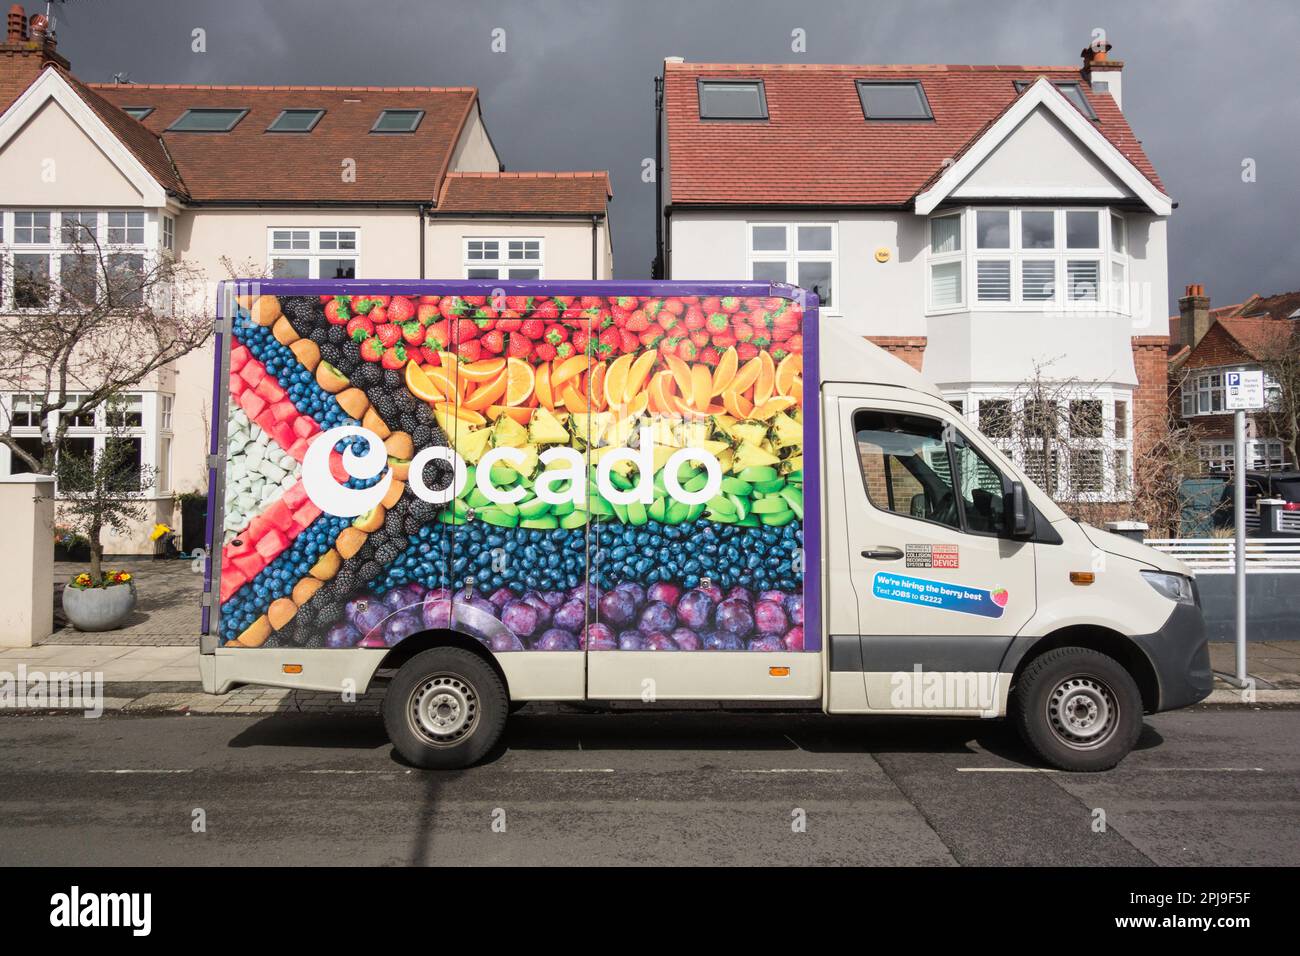 Gros plan de fruits frais sur le côté d'une fourgonnette de livraison Ocado dans une rue de banlieue à Londres, Angleterre, Royaume-Uni Banque D'Images